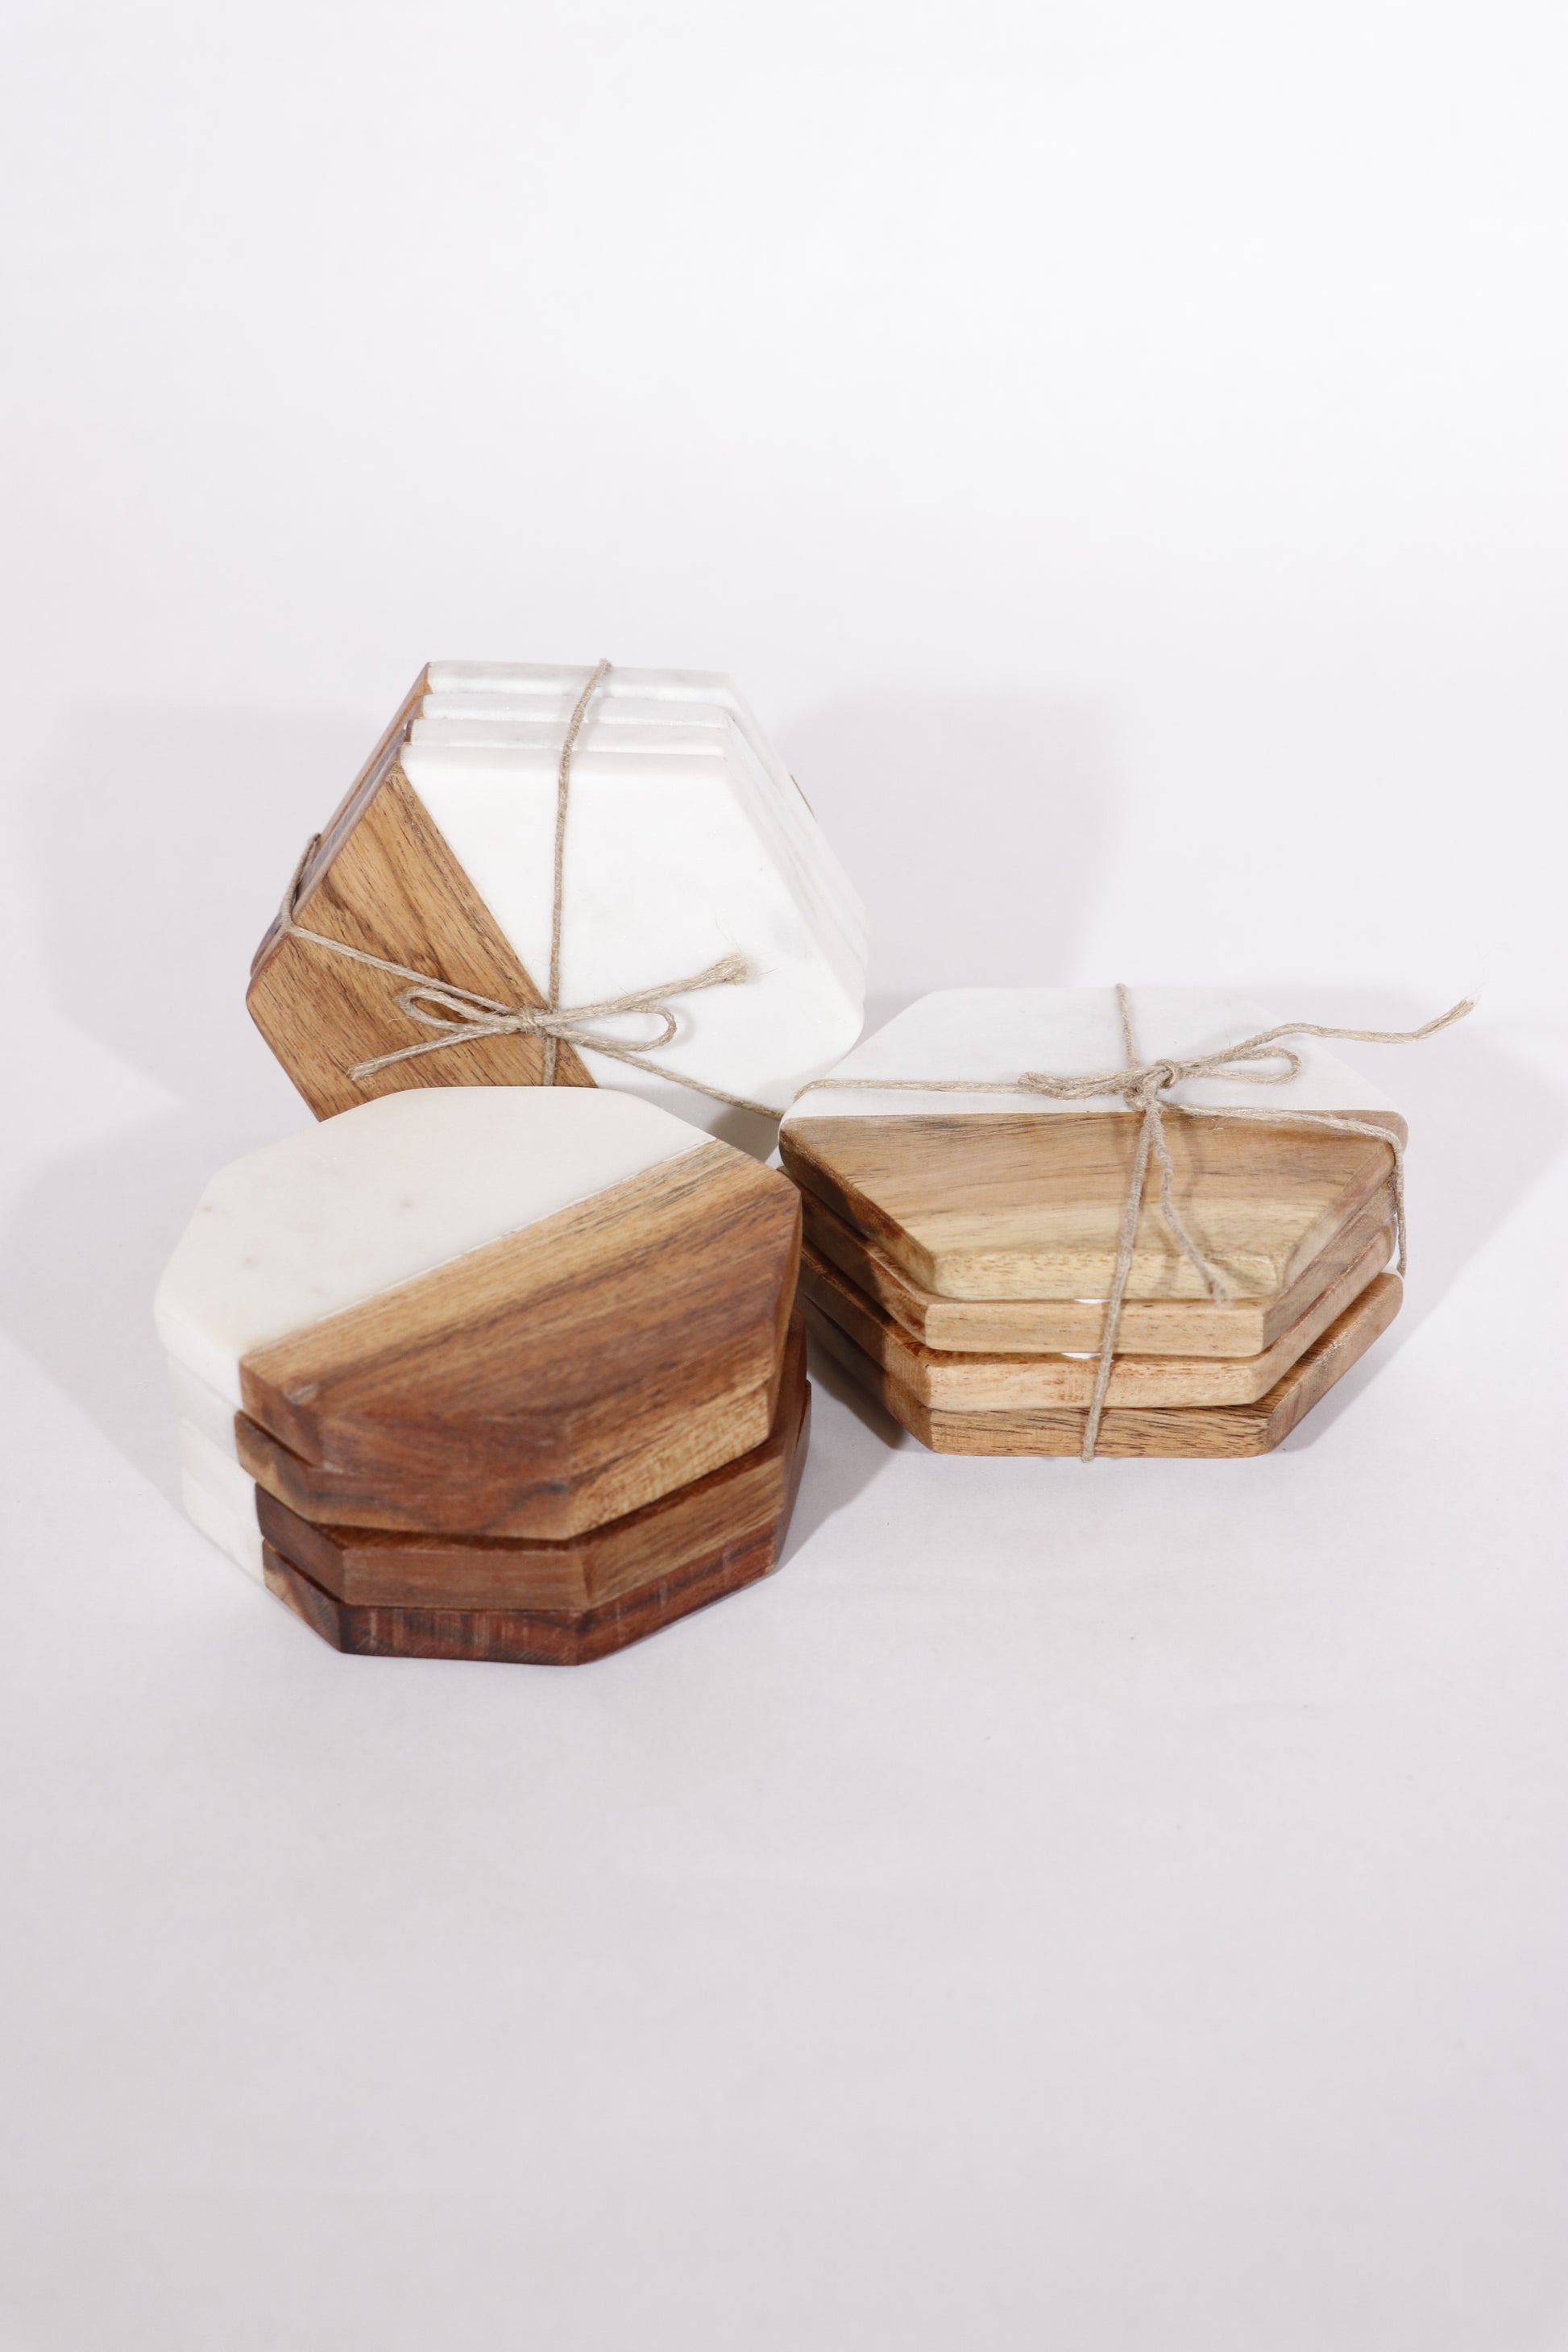 Three sets shown of acacia wood and marble coaster sets.